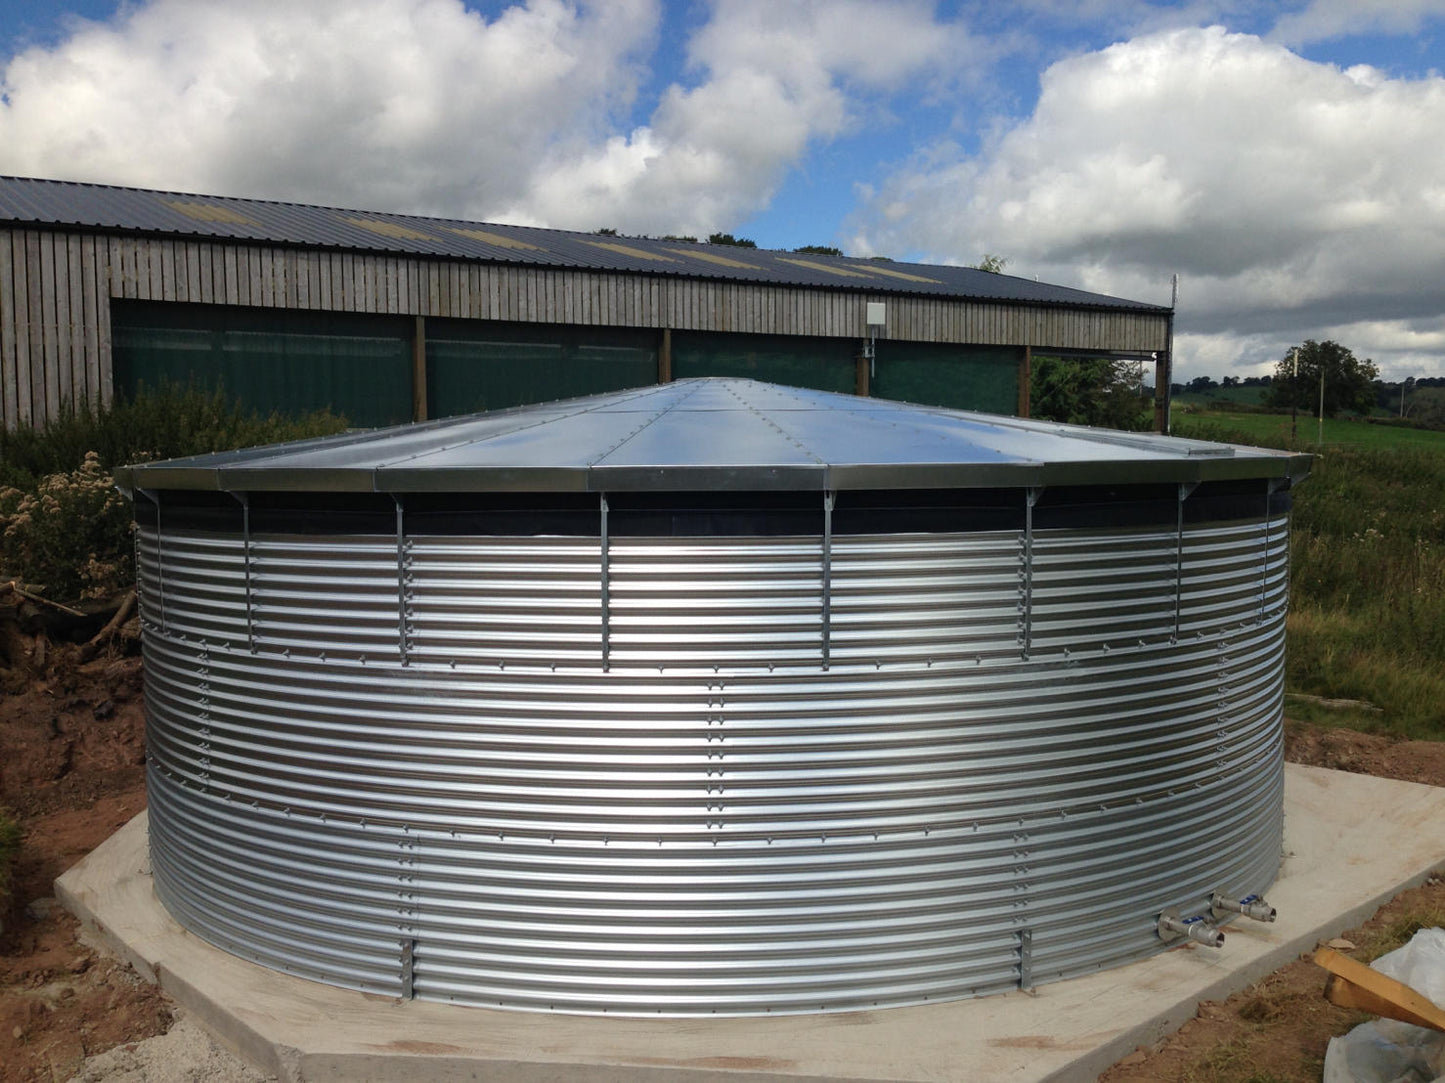 288,000 litre Galvanised Steel Water Tank